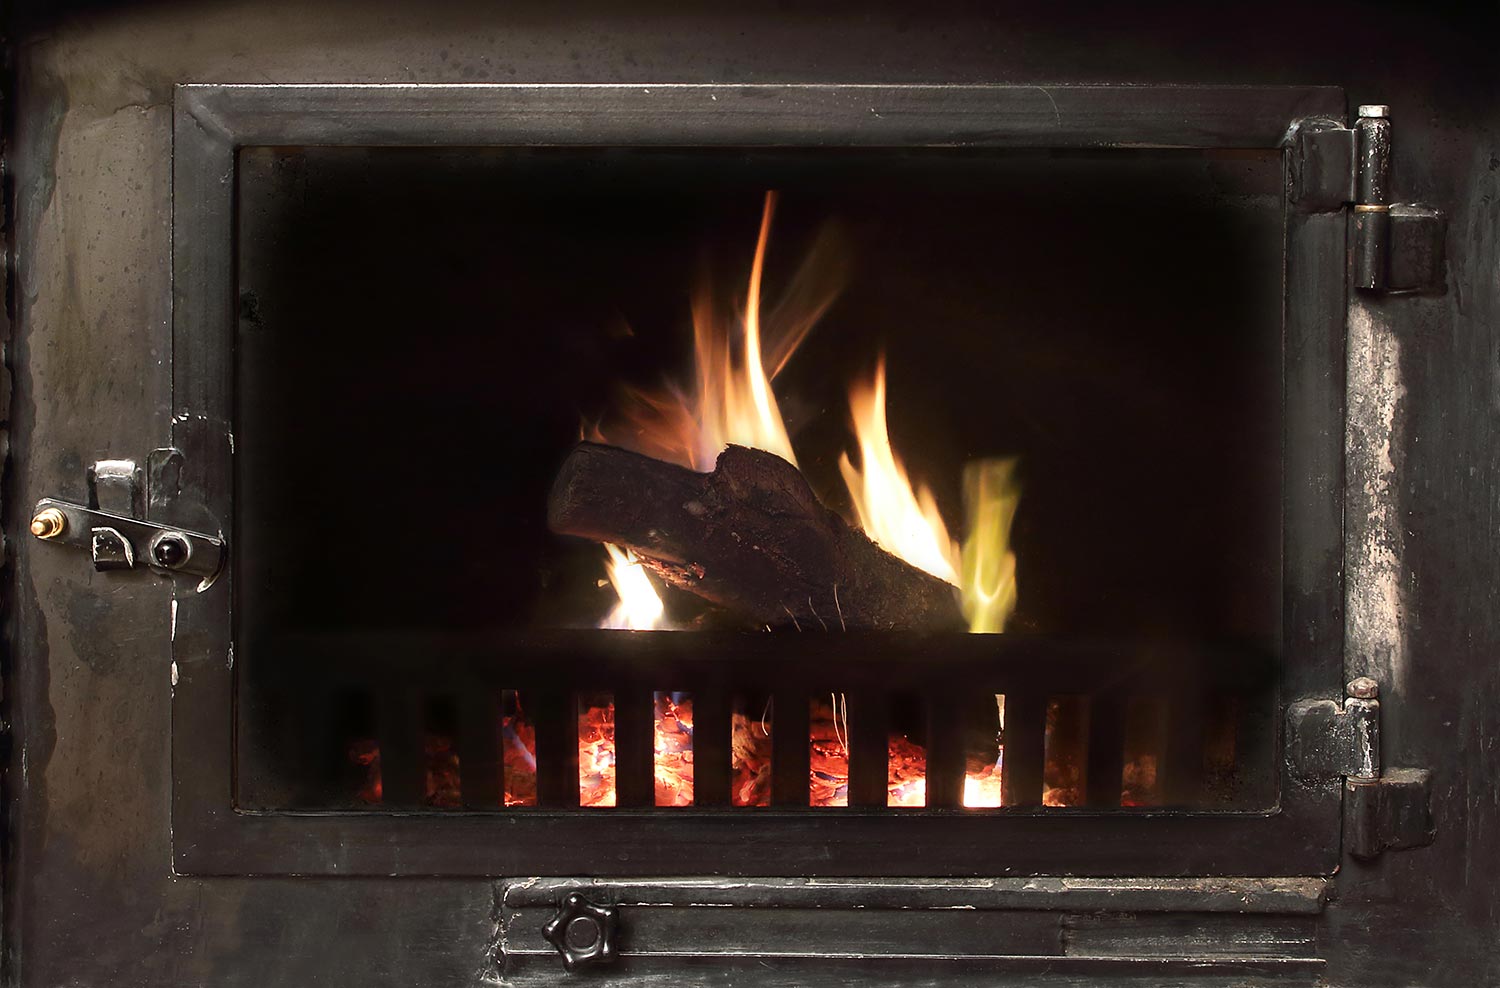 Fire in a fireplace in winter